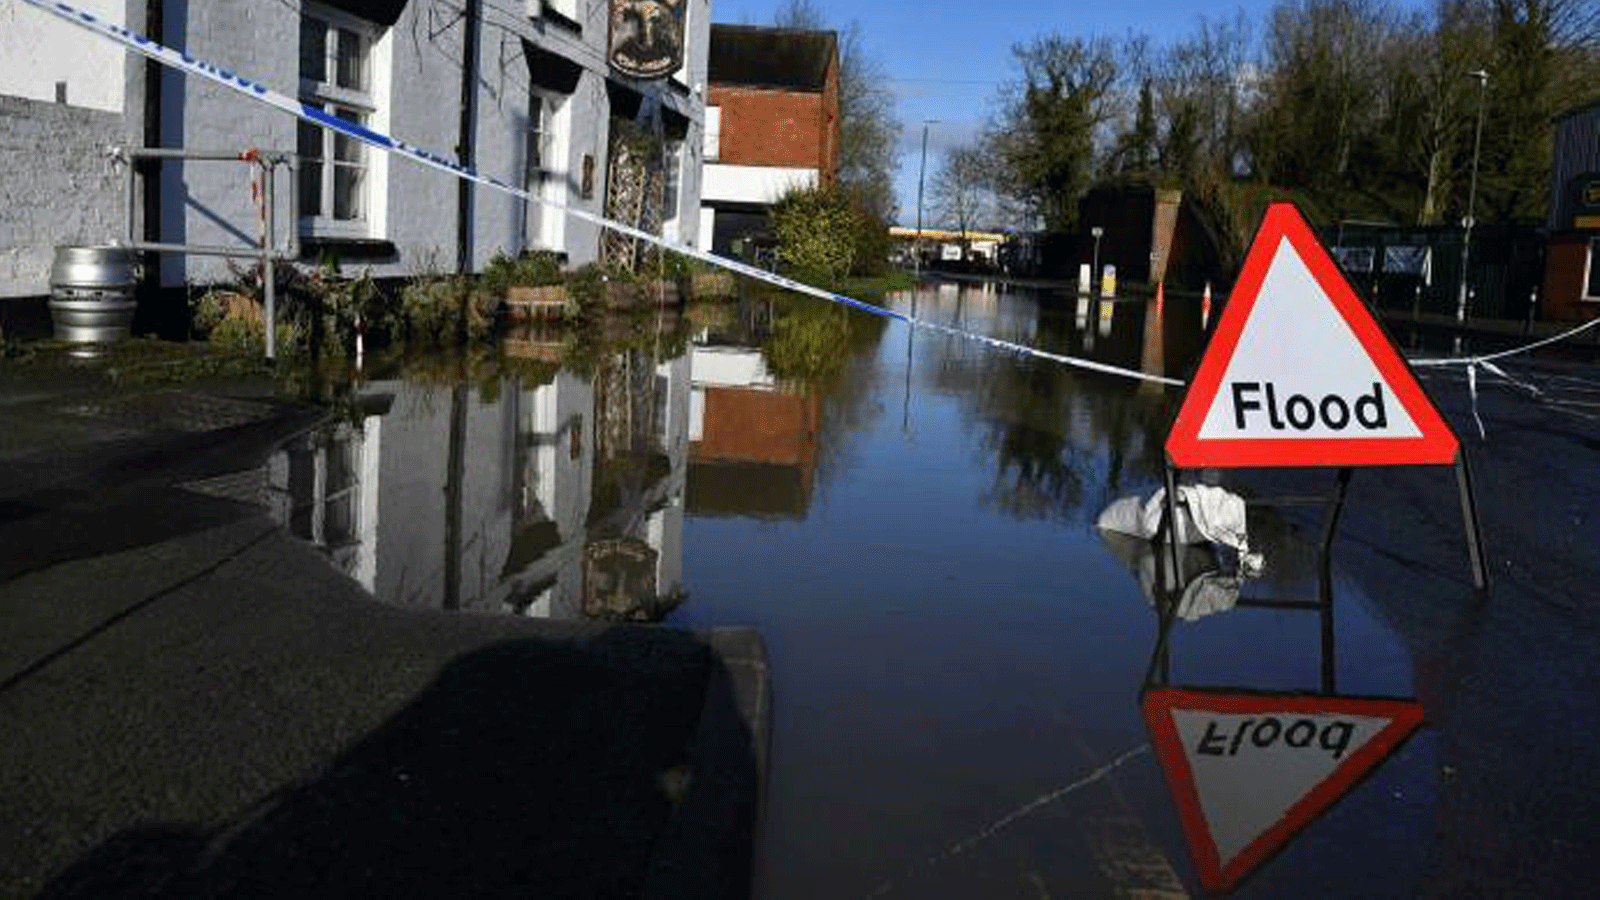 فيضانات في توكسبري، جلوسيسترشاير، في شباط/ فبراير 2020. كانت المملكة المتحدة أكثر رطوبة بنسبة 6%، في المتوسط، على مدار الثلاثين عامًا الماضية